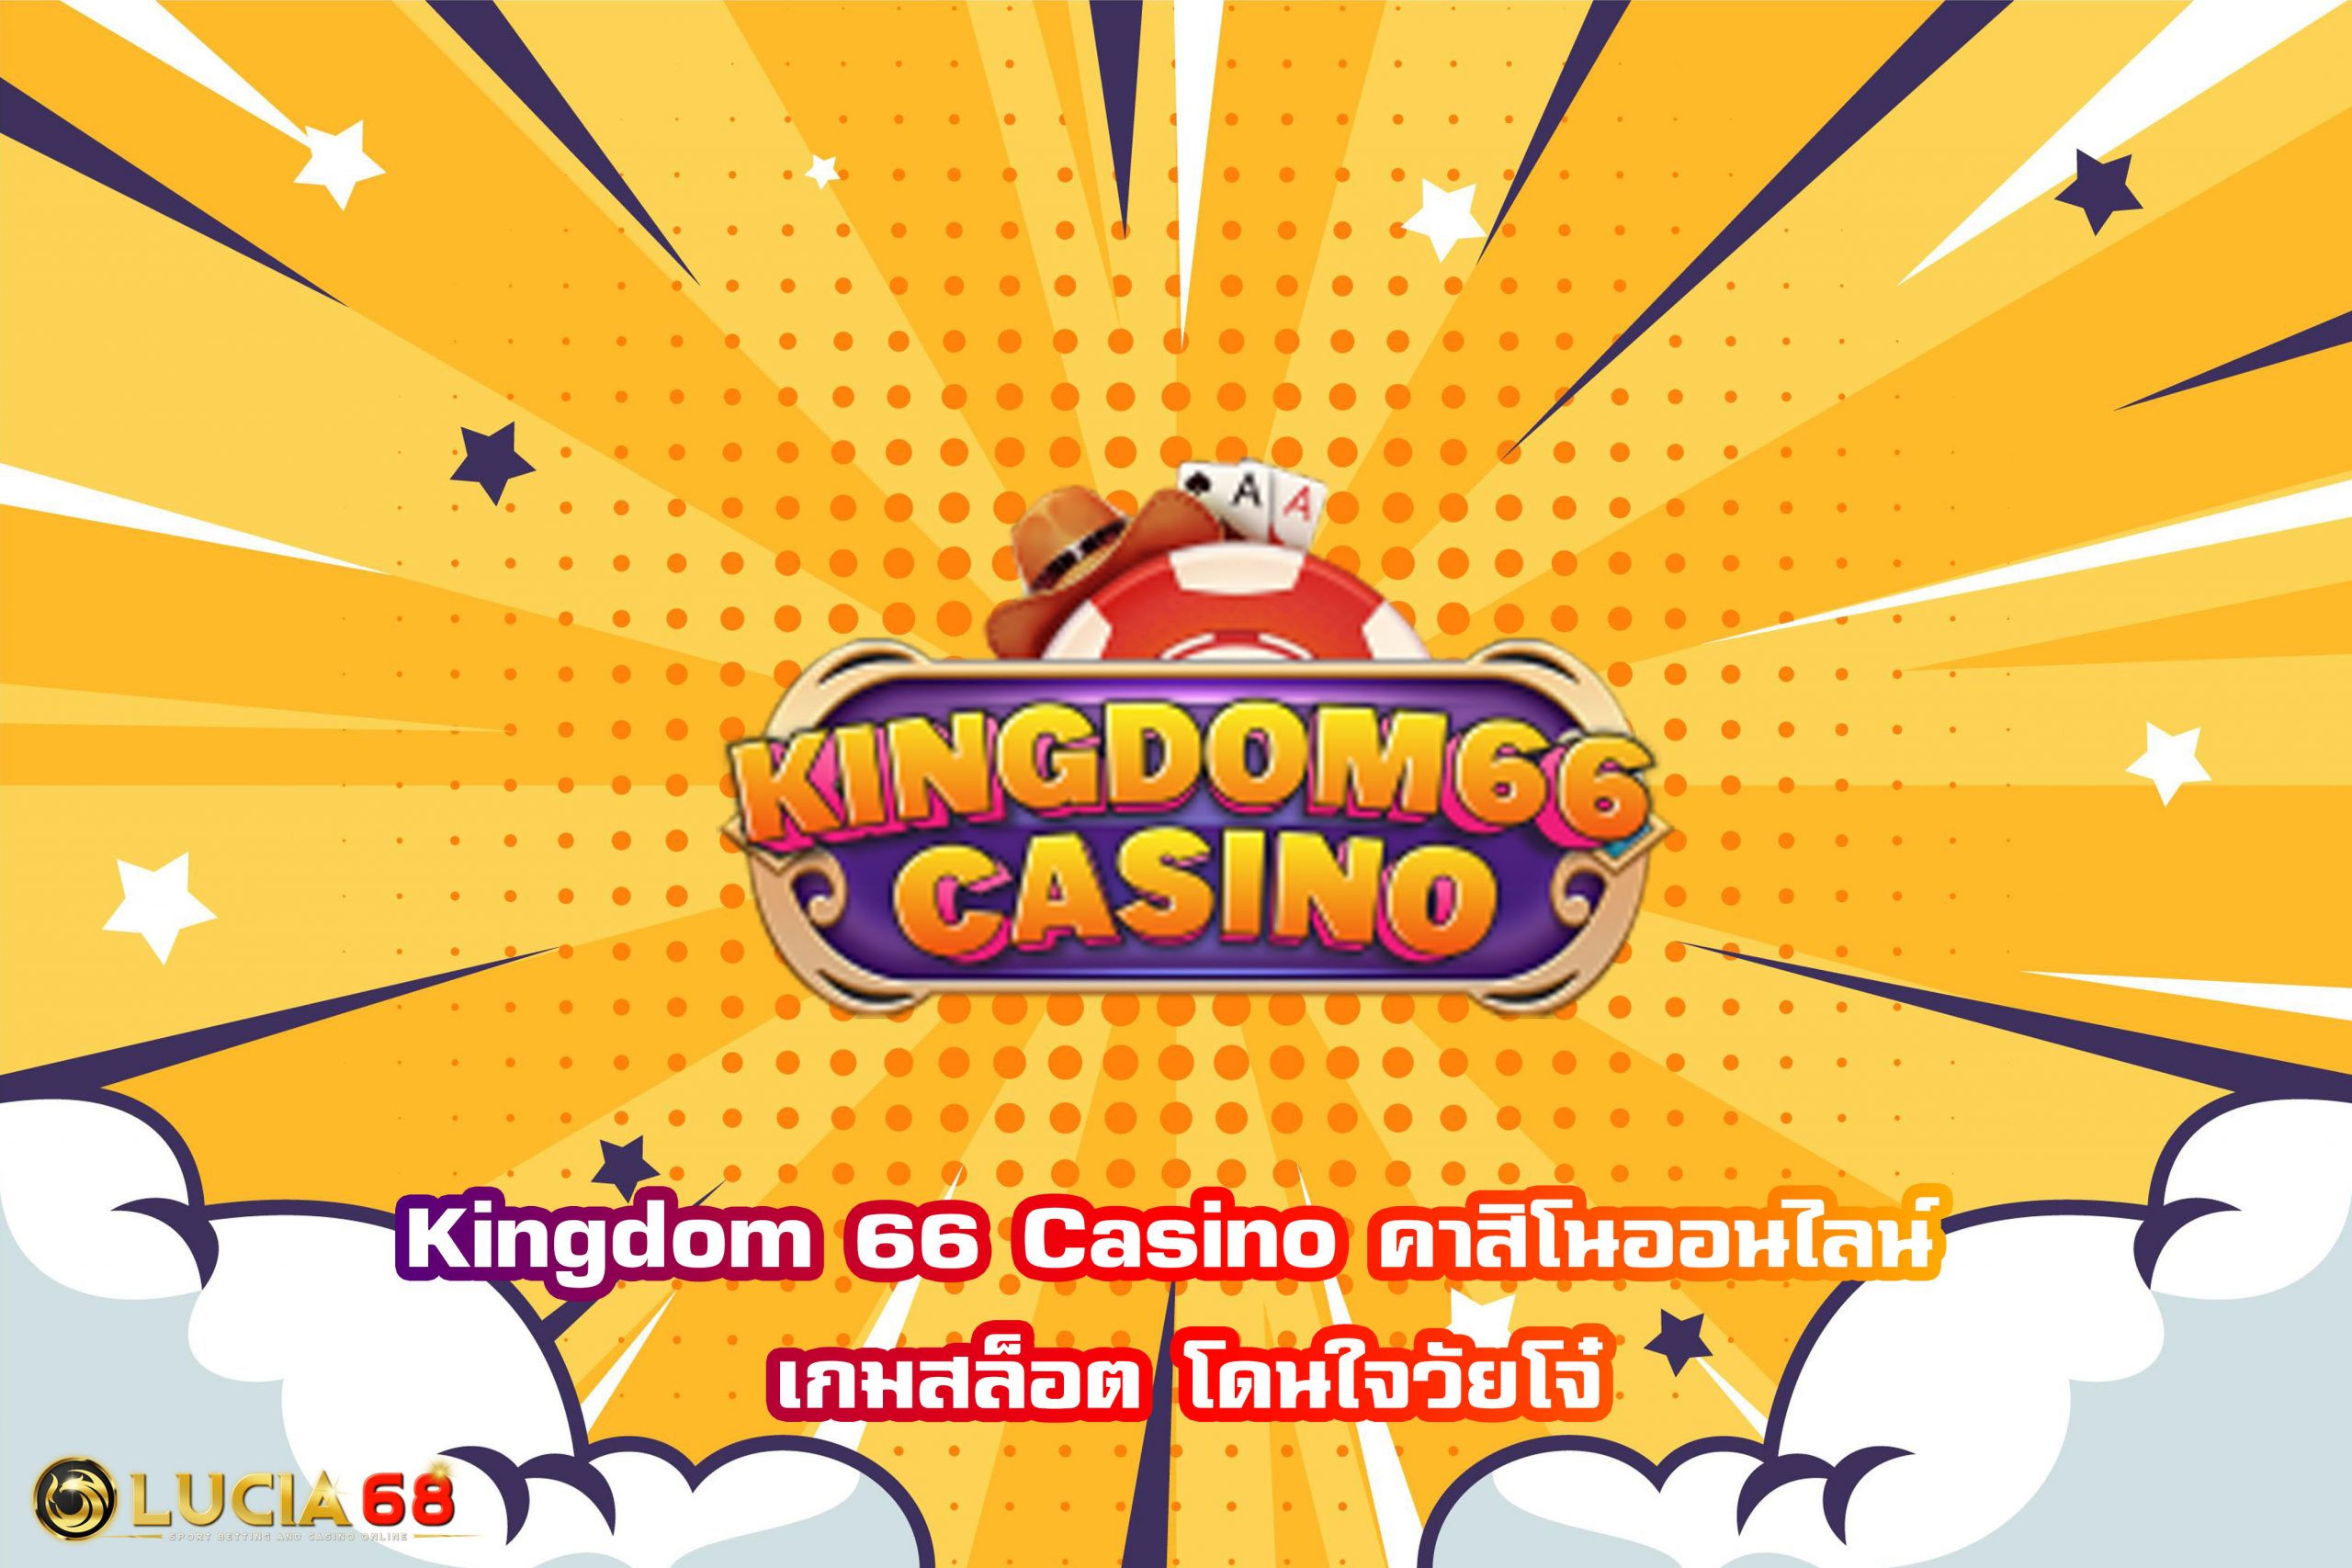 Kingdom 66 Casino คาสิโนออนไลน์ เกมสล็อต โดนใจวัยโจ๋